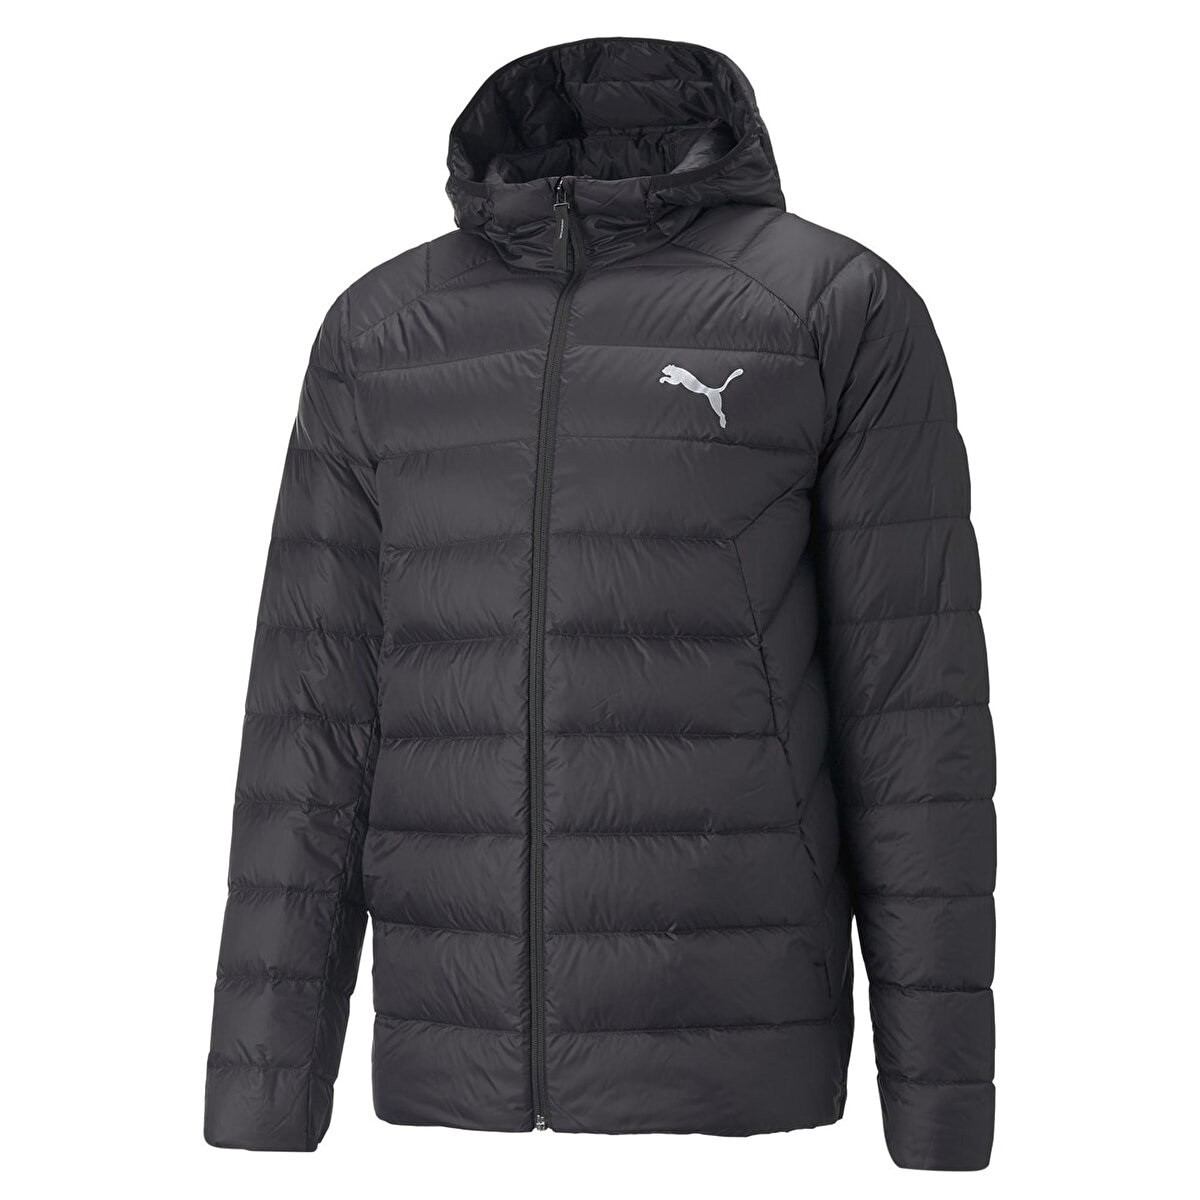 Куртка спортивна чоловіча Puma PackLITE Down 849355 01 (чорна, пуховик, зима, термо, водонепроникна, пума), фото 1